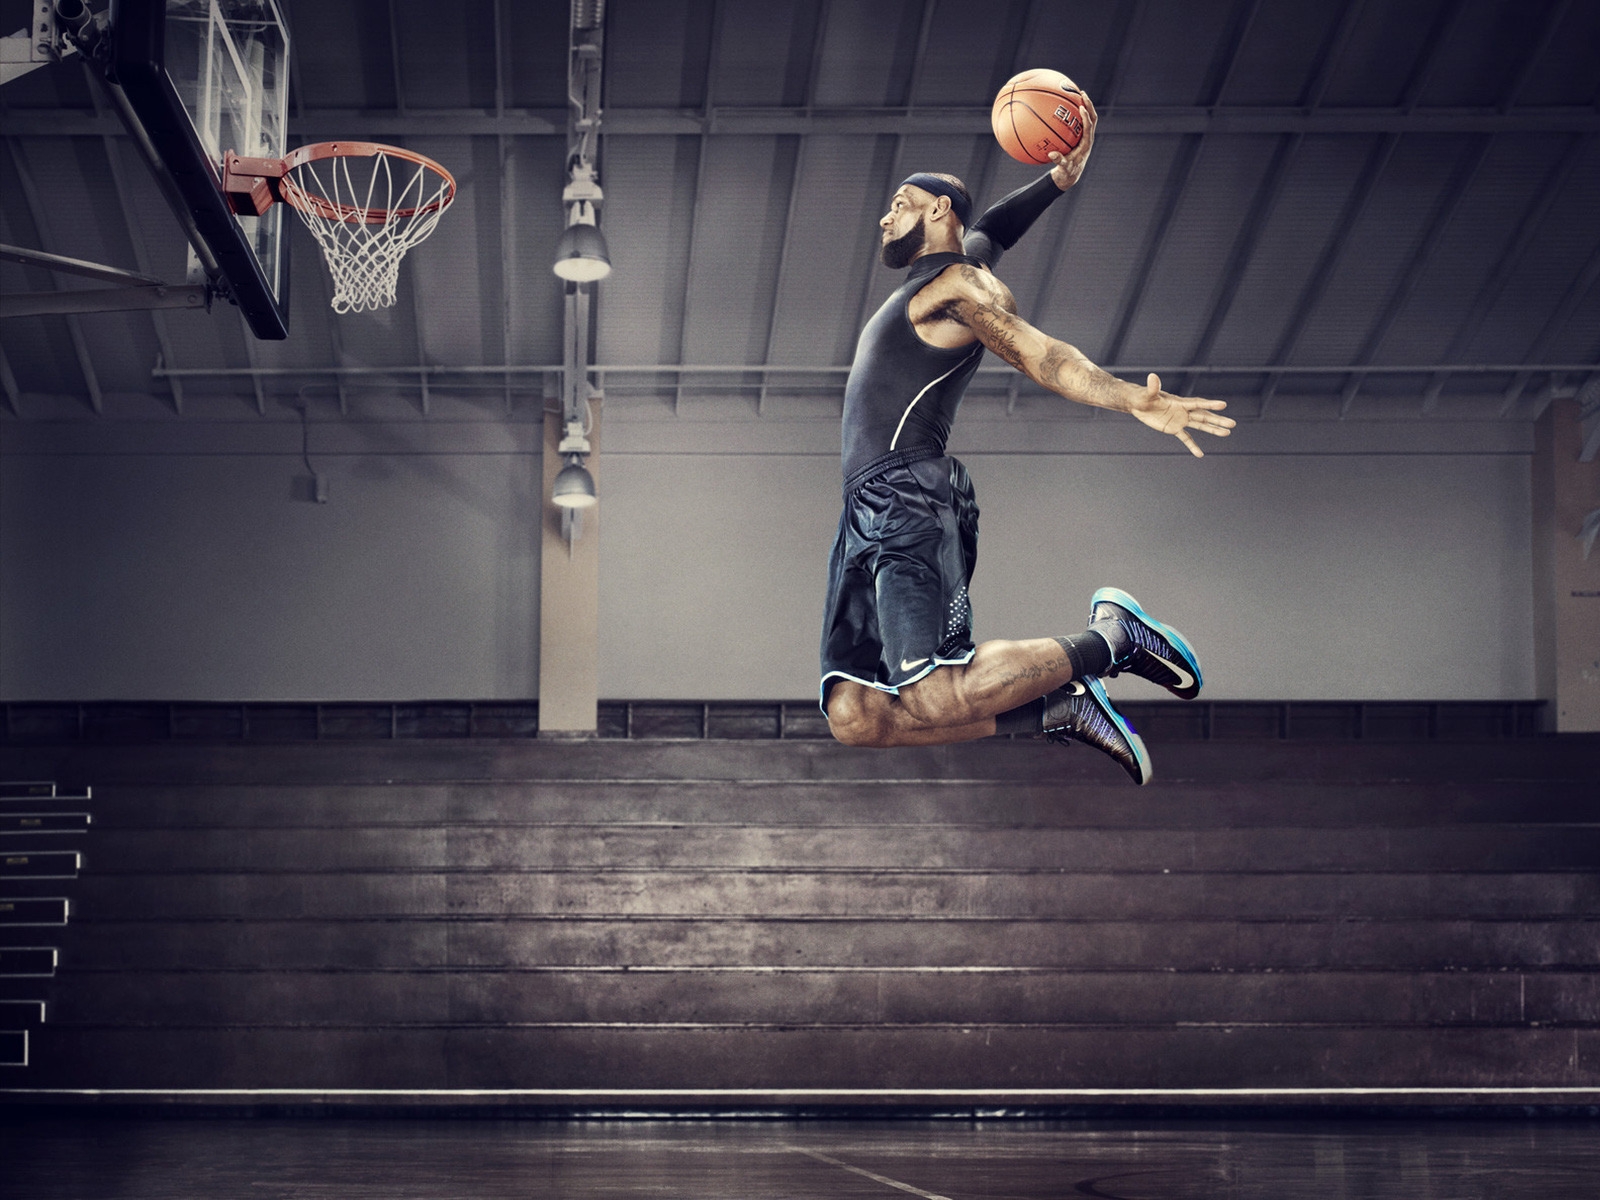 Nike Basketball for 1600 x 1200 resolution